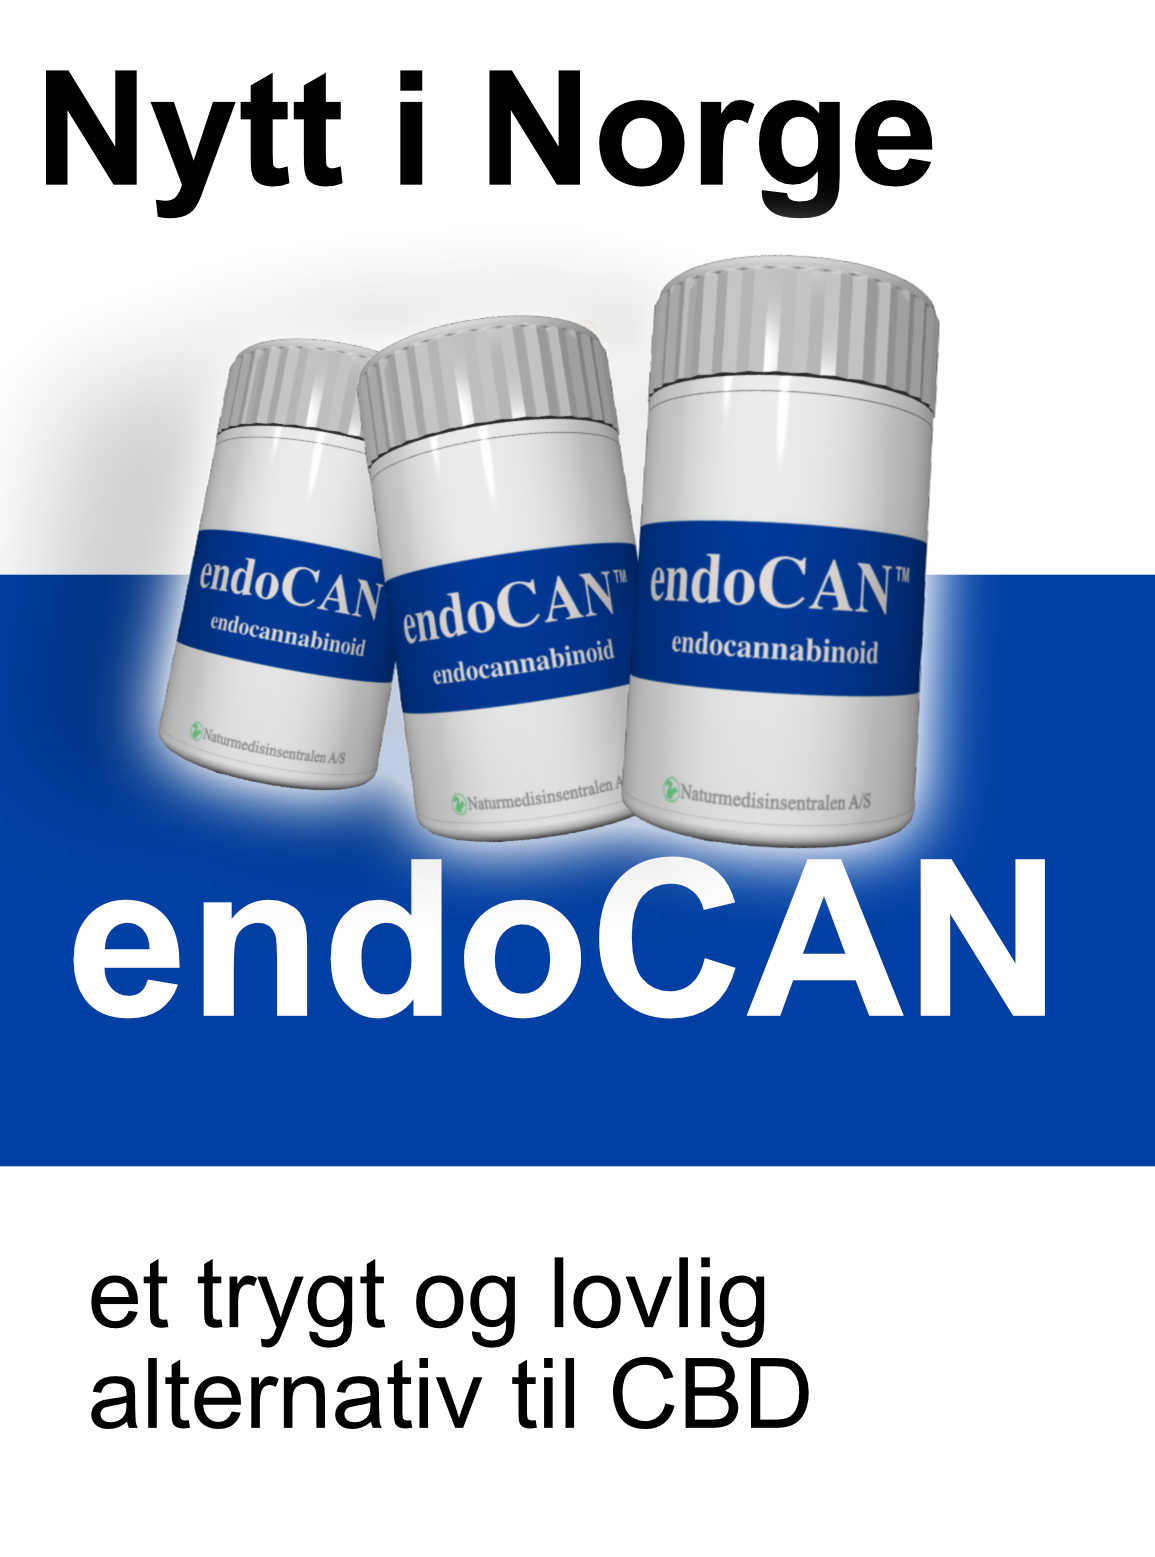 endoCAN alternativ til THC CBD olje helsekost naturmedisin kosttilskudd smerte inflammasjon